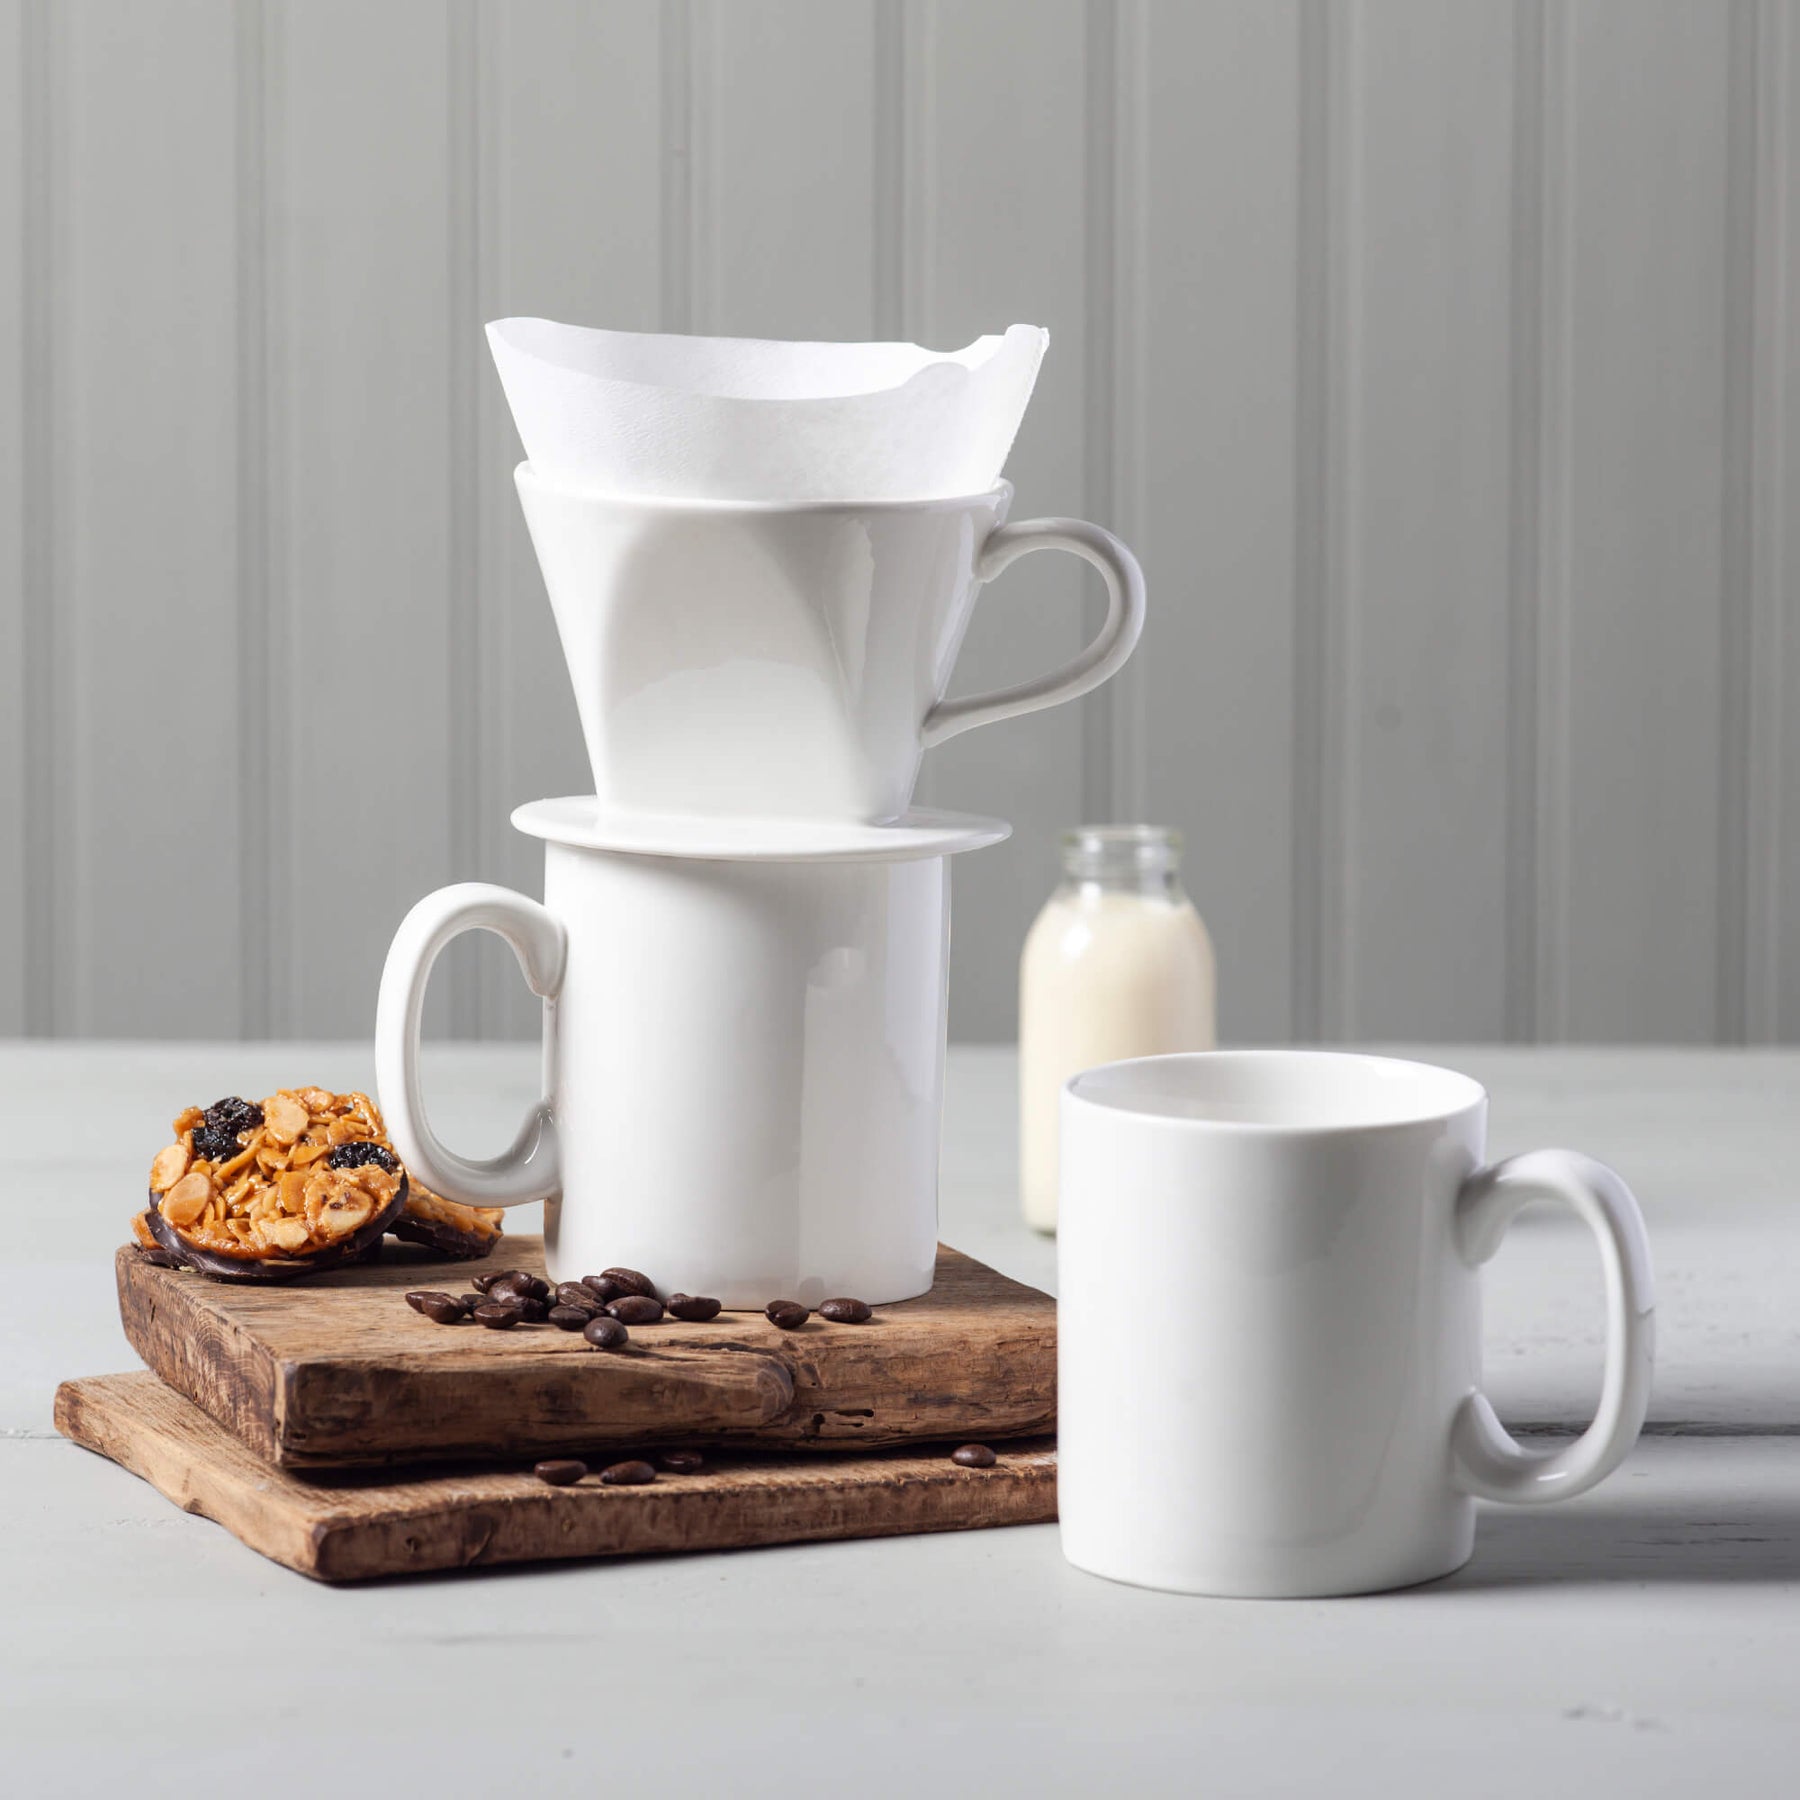 Porcelain Mug & Coffee Filter Cone Set